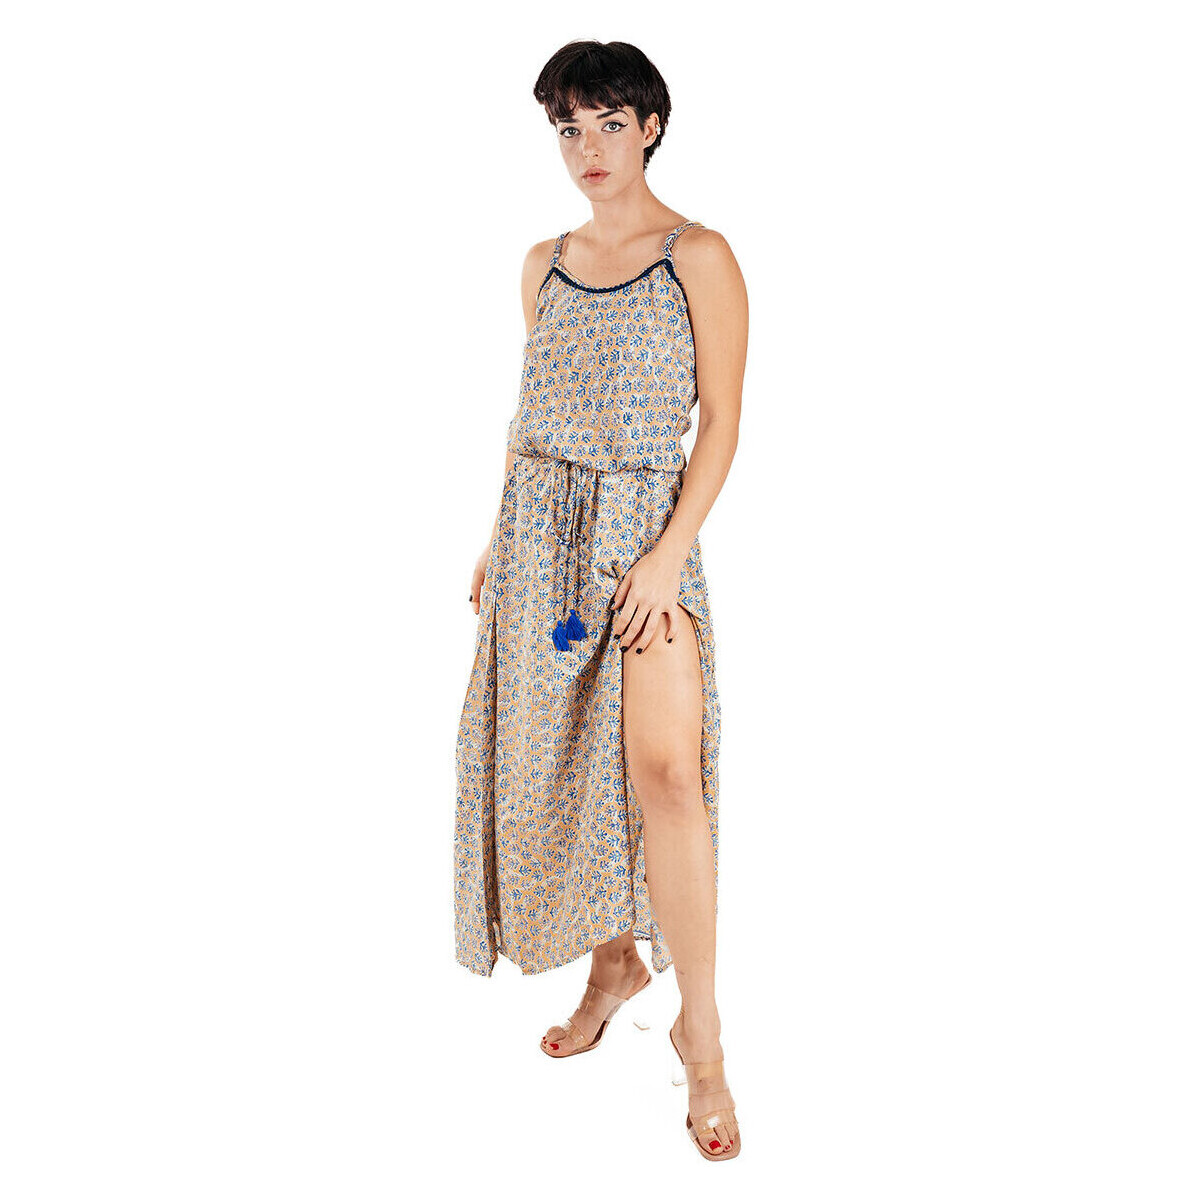 Textil Mulher Vestidos compridos Isla Bonita By Sigris Vestido Midi Longo Azul